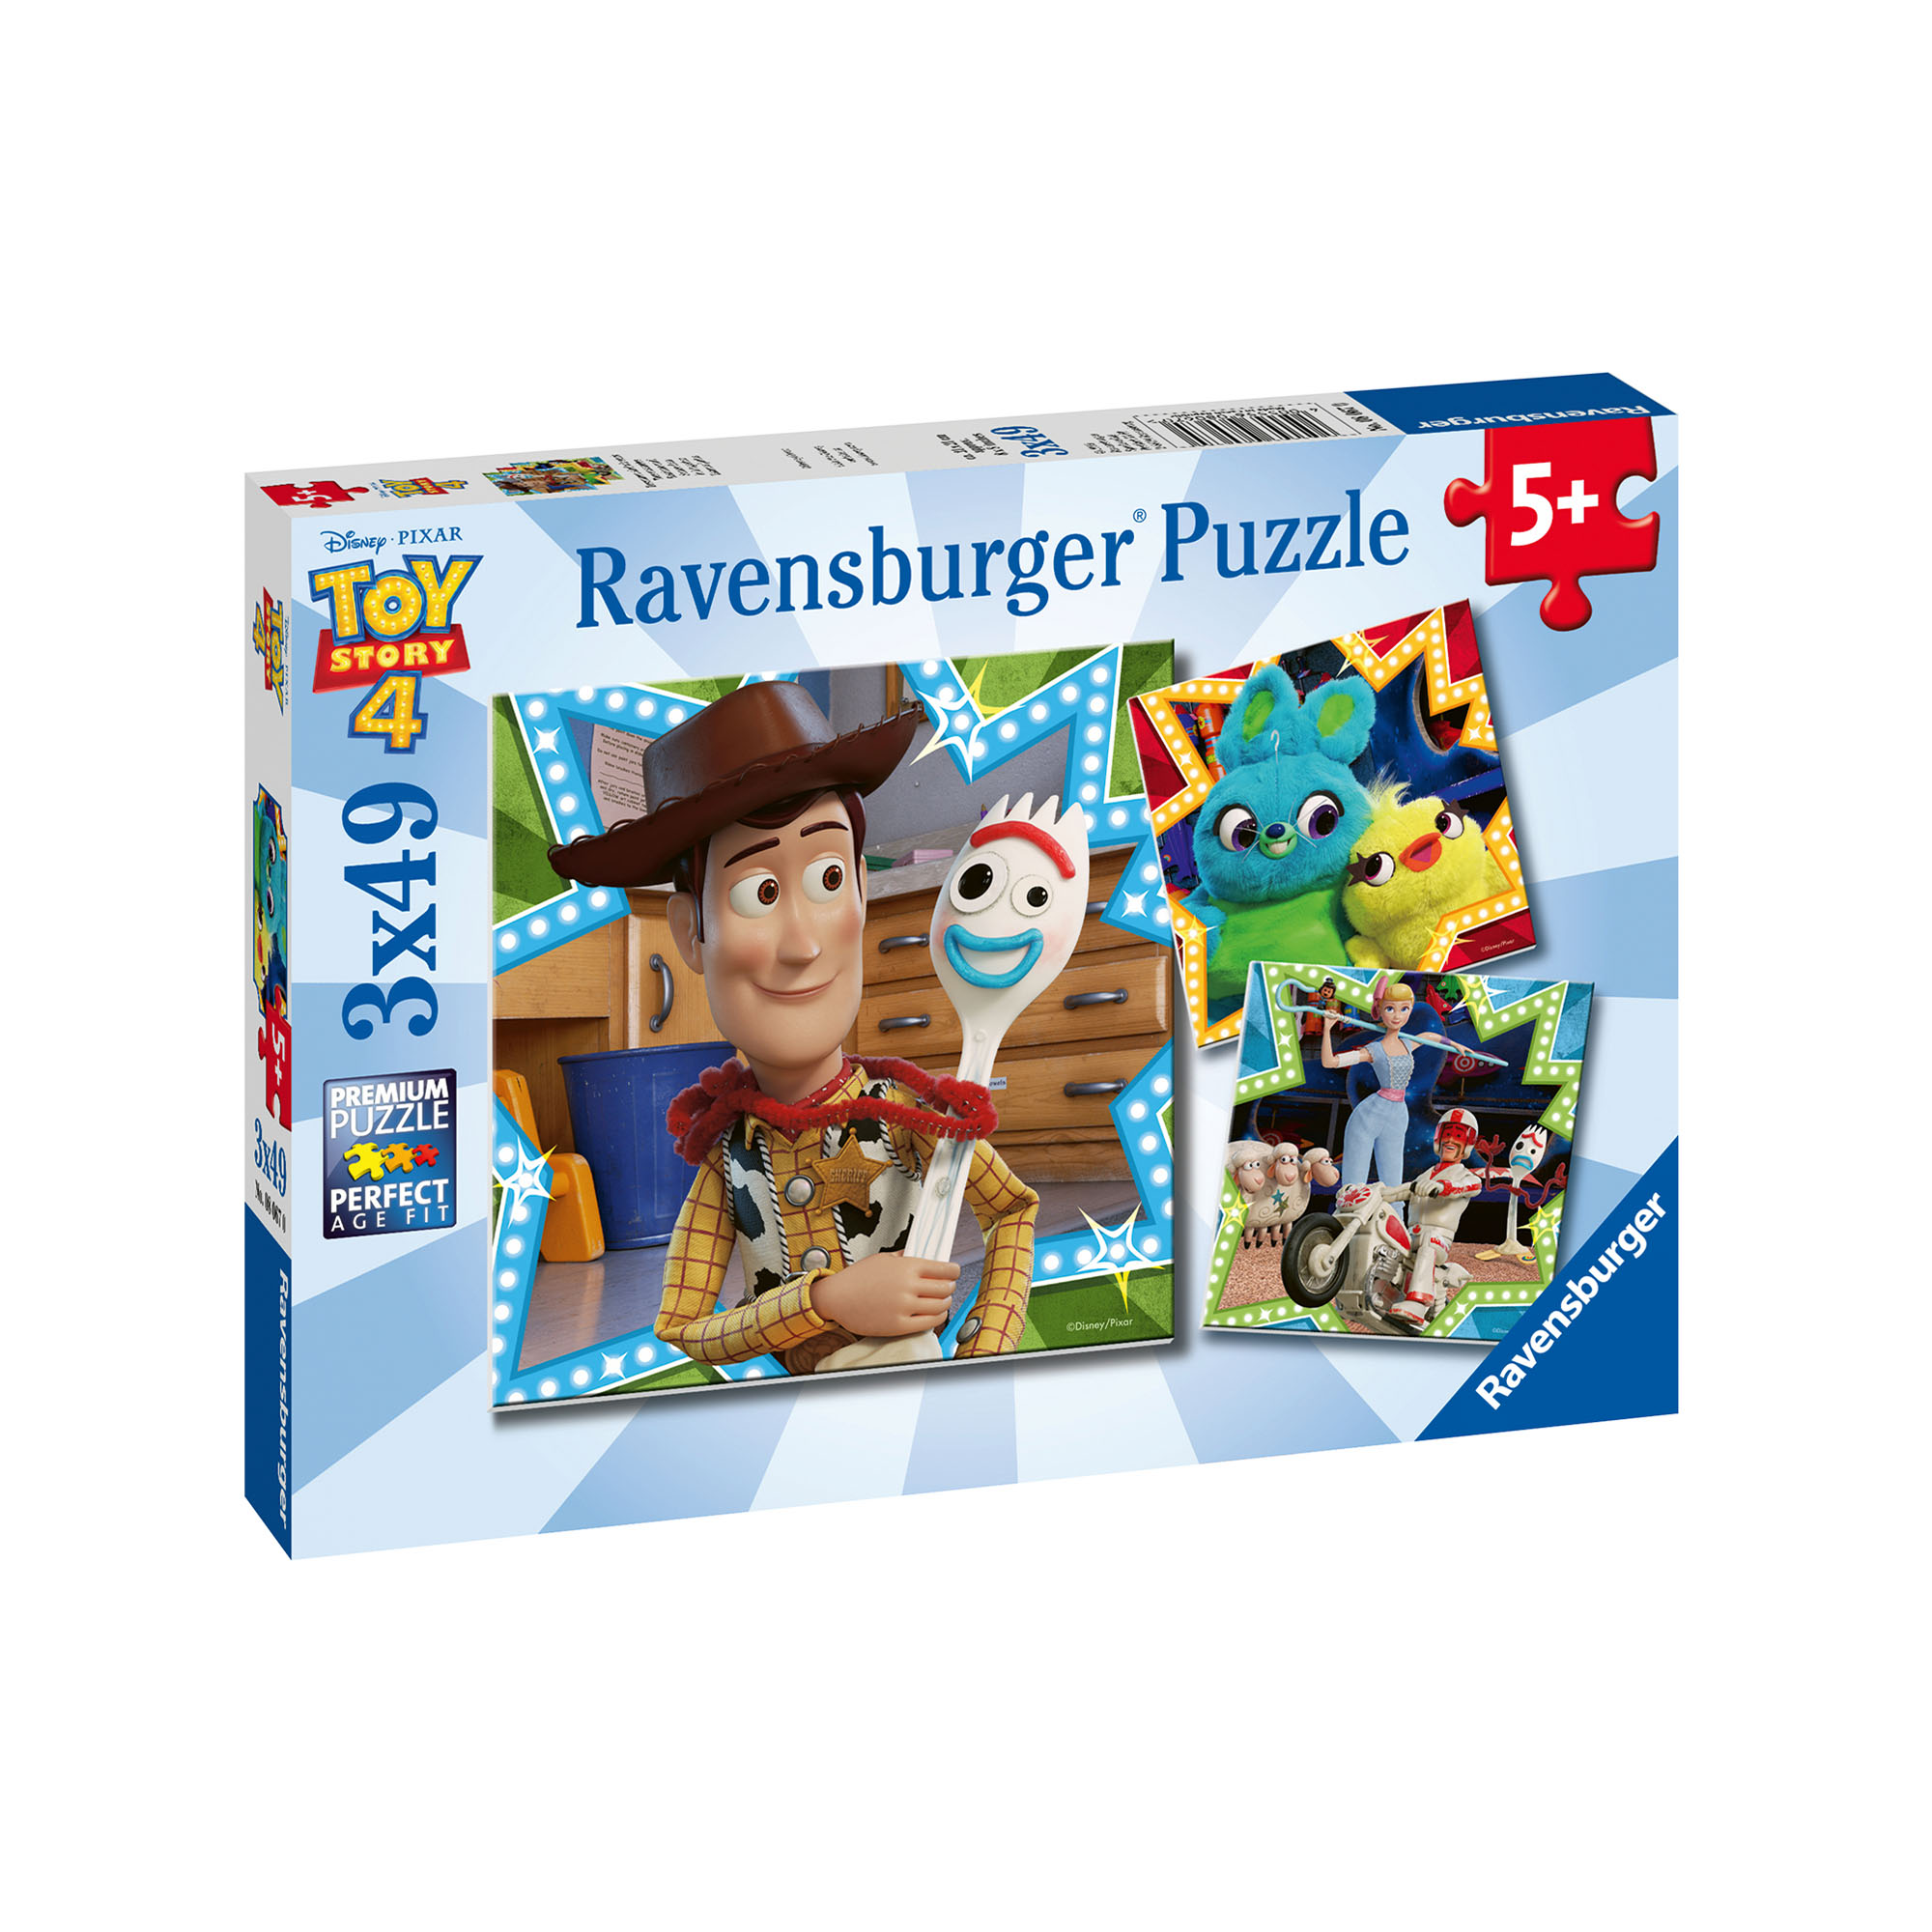 Ravensburger Puzzle 3x49 pezzi 08067 - Toy Story, , large